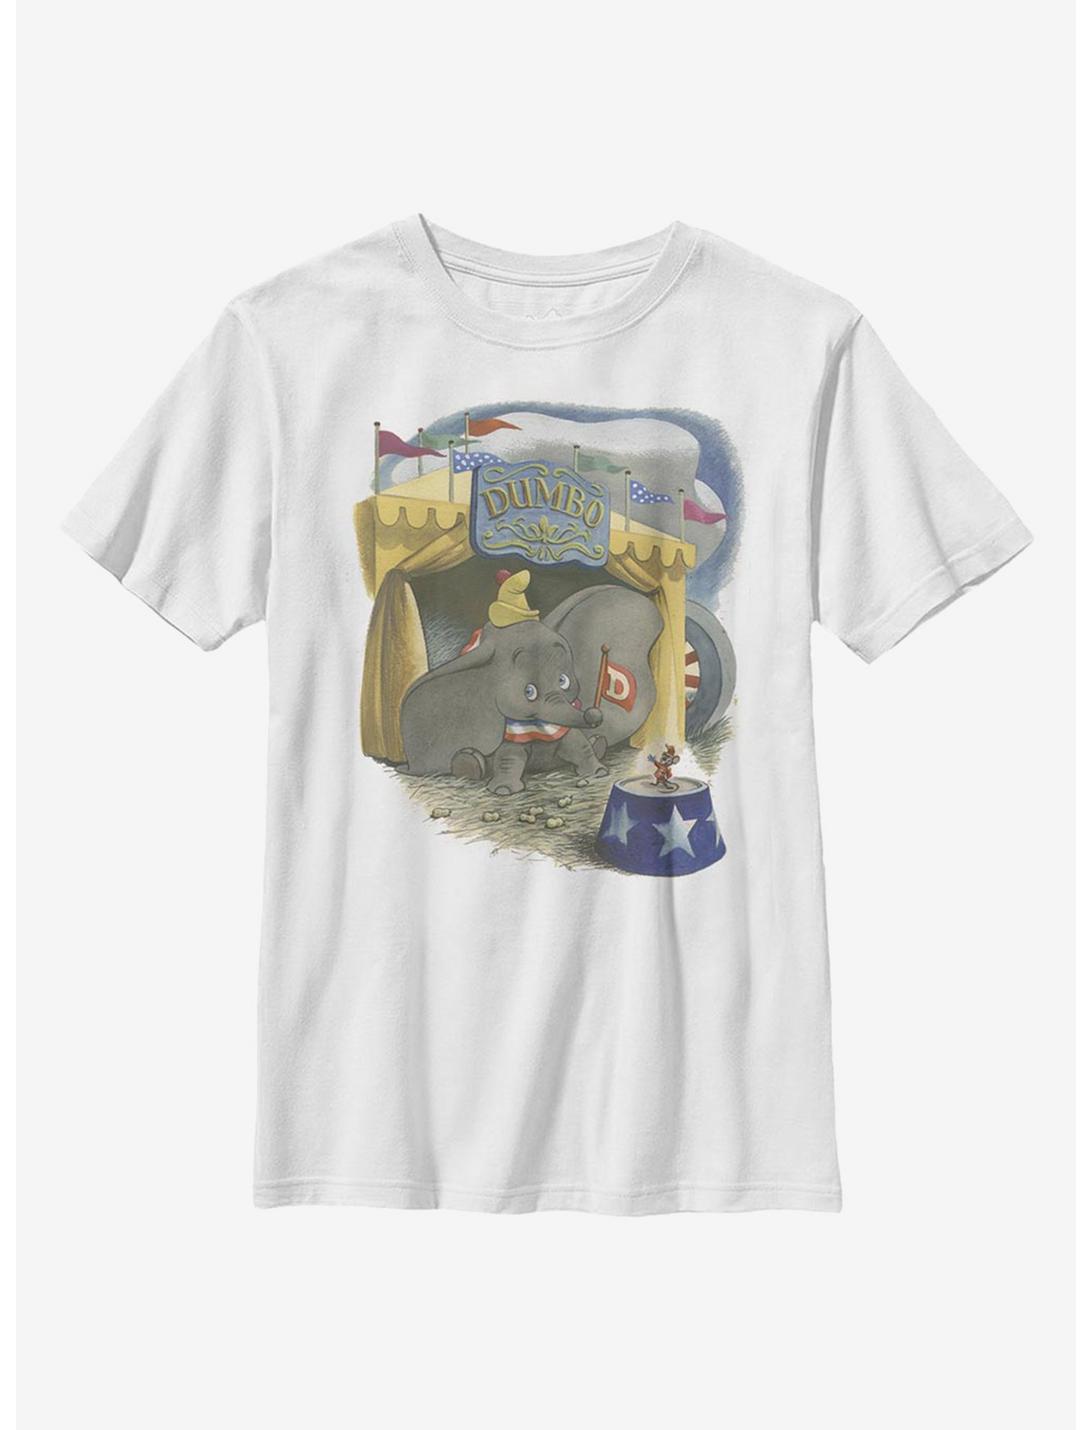 Disney Dumbo Illustrated Elephant Youth T-Shirt, WHITE, hi-res